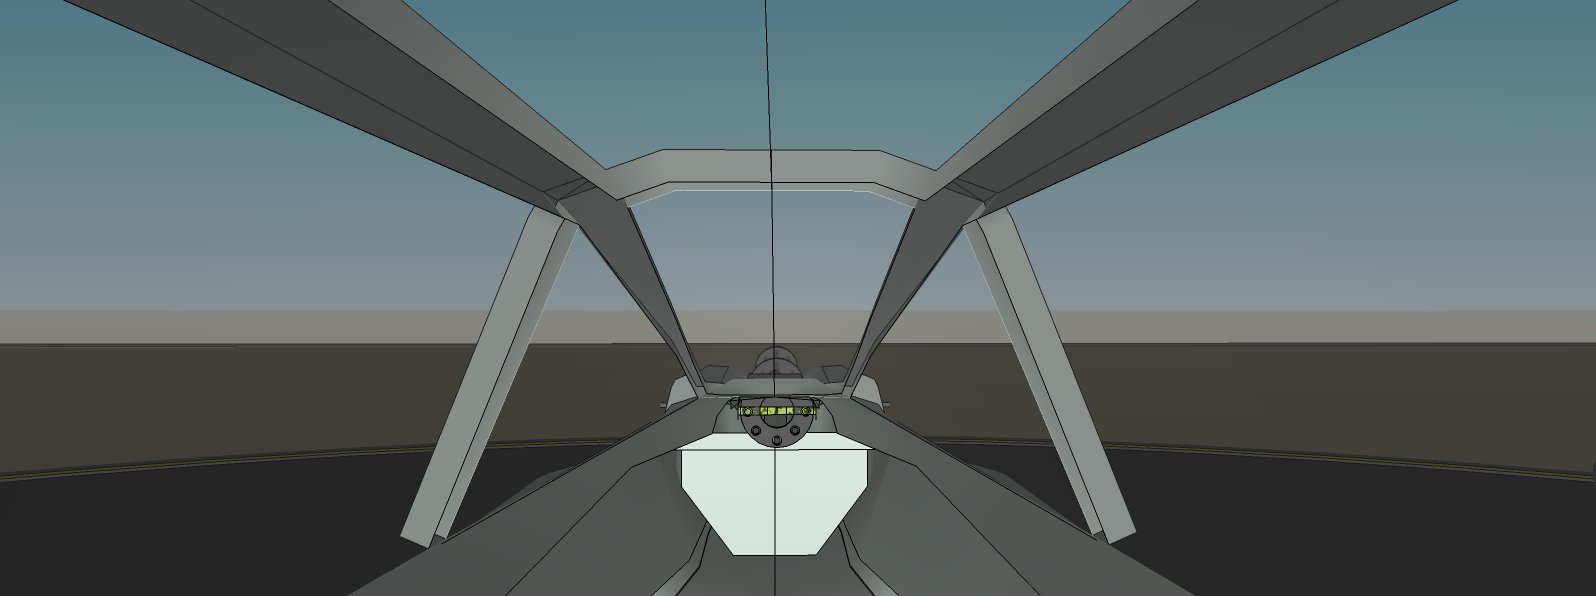 cockpit_view.png